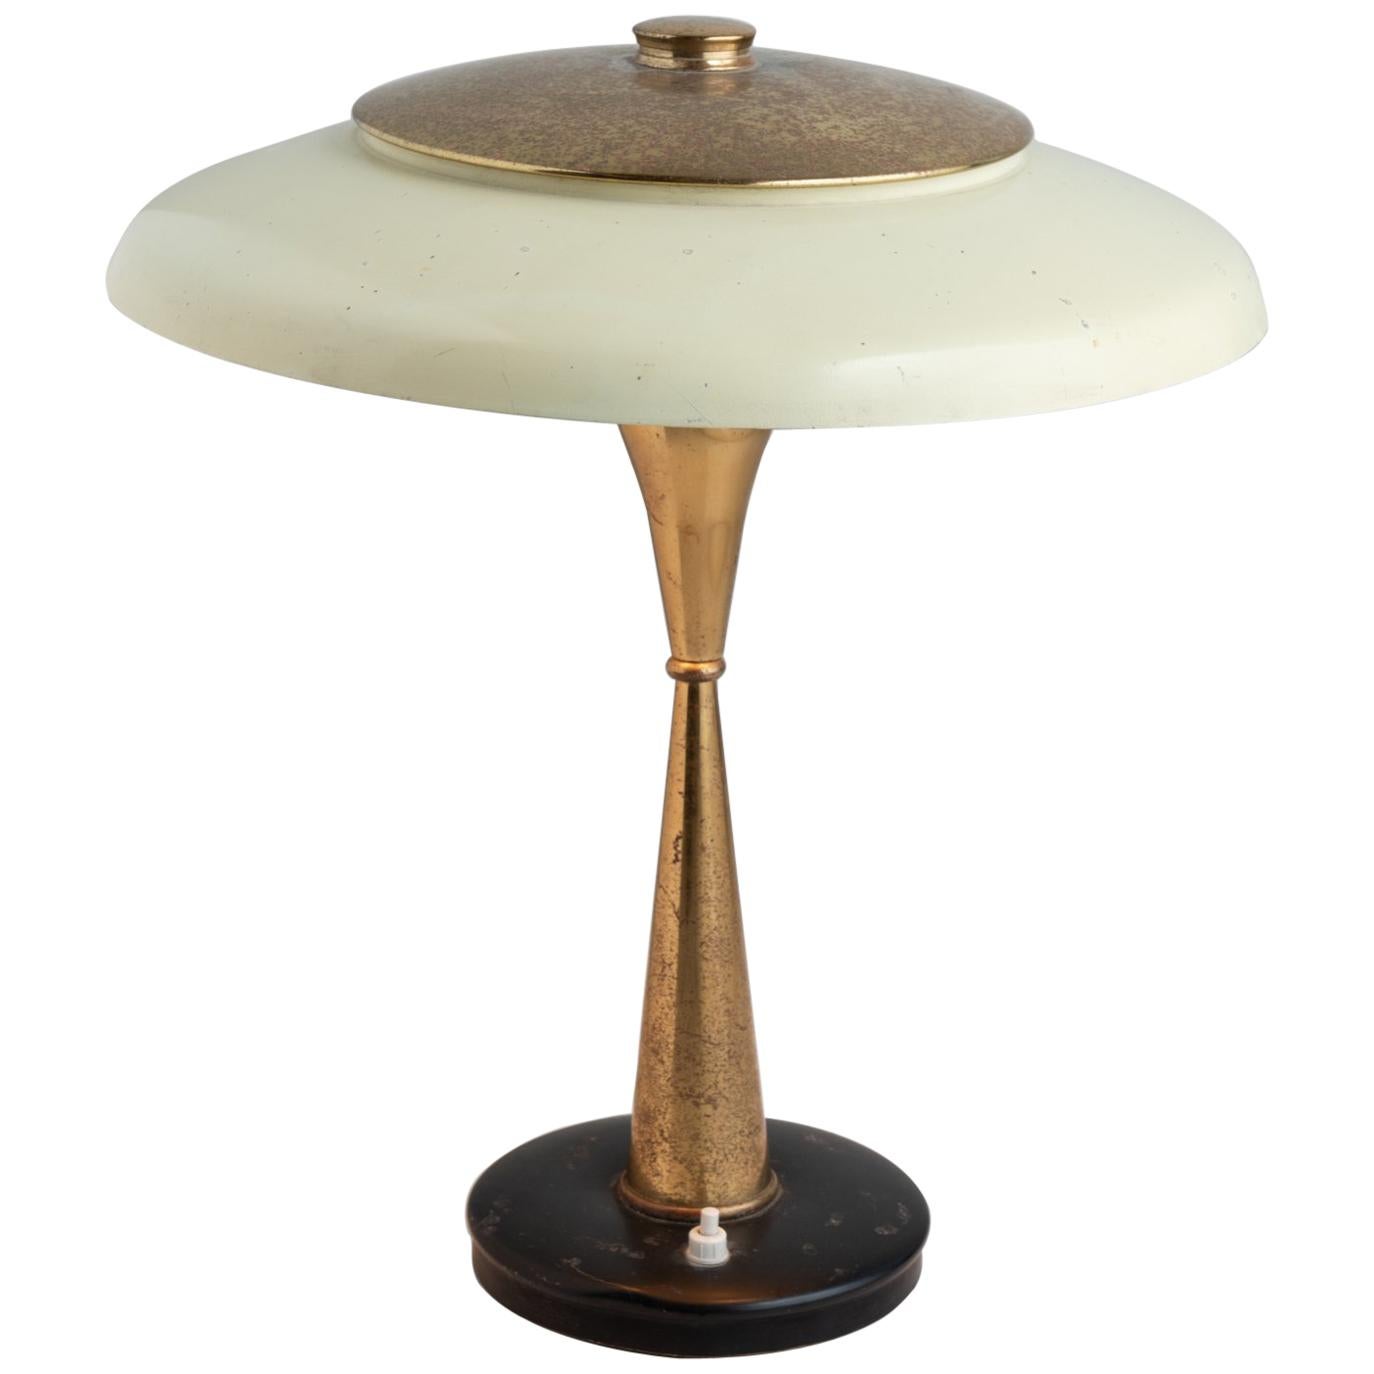 Oscar Torlasco Table Lamp, Italy circa 1950